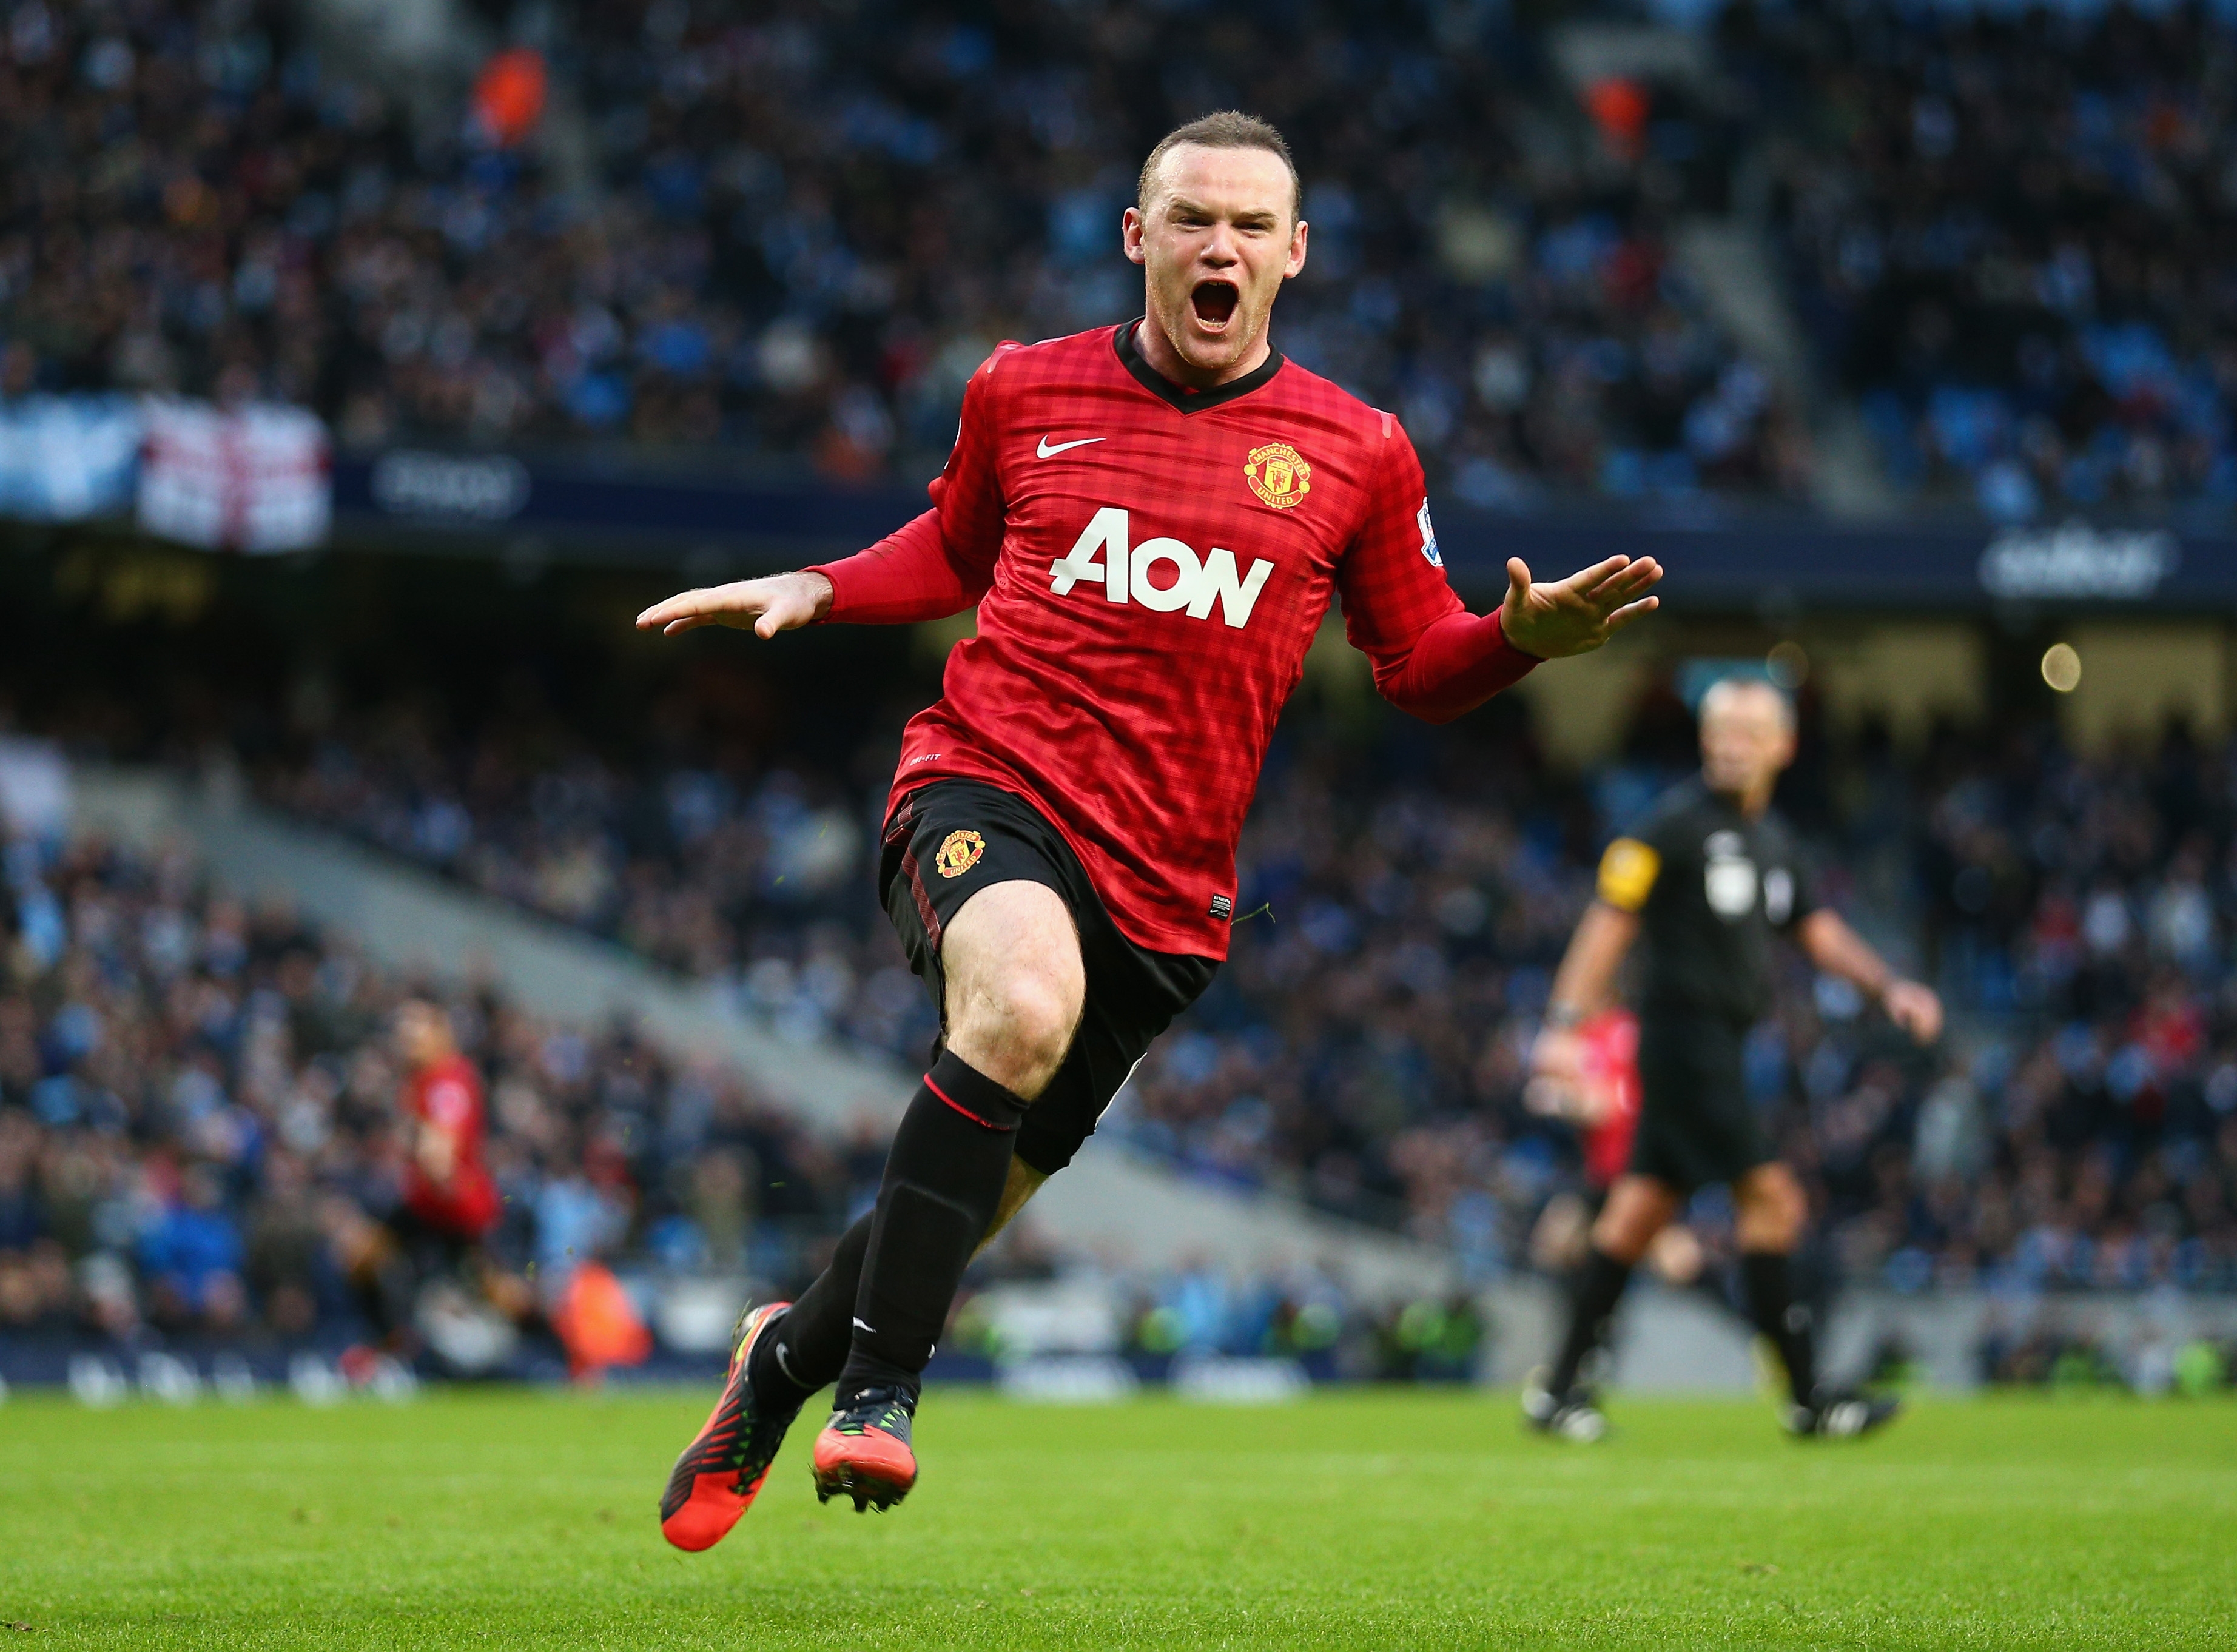 Wayne Rooney Goal Celebration Manchester United Wayne Rooney 3688x2724